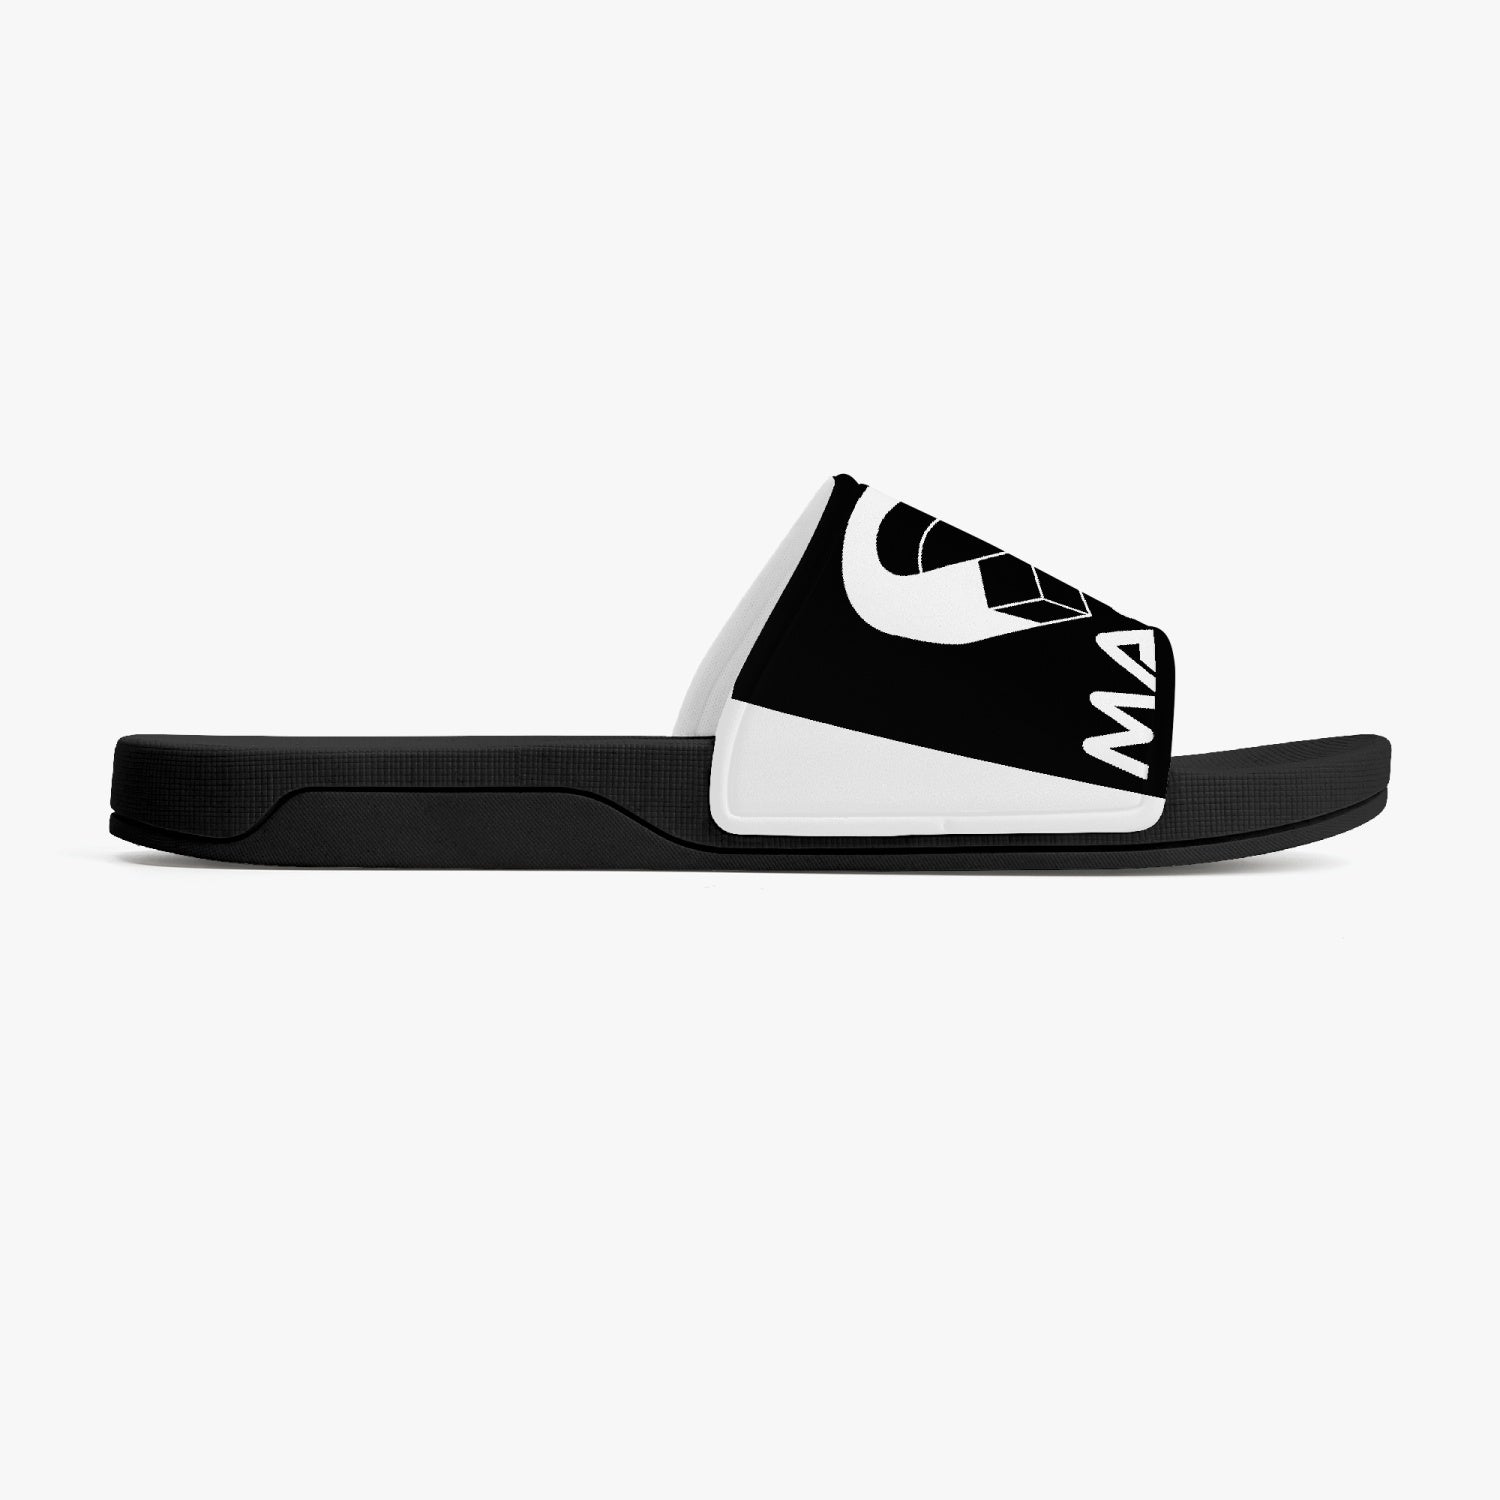 Magnet Slides Casual Sandals - Black